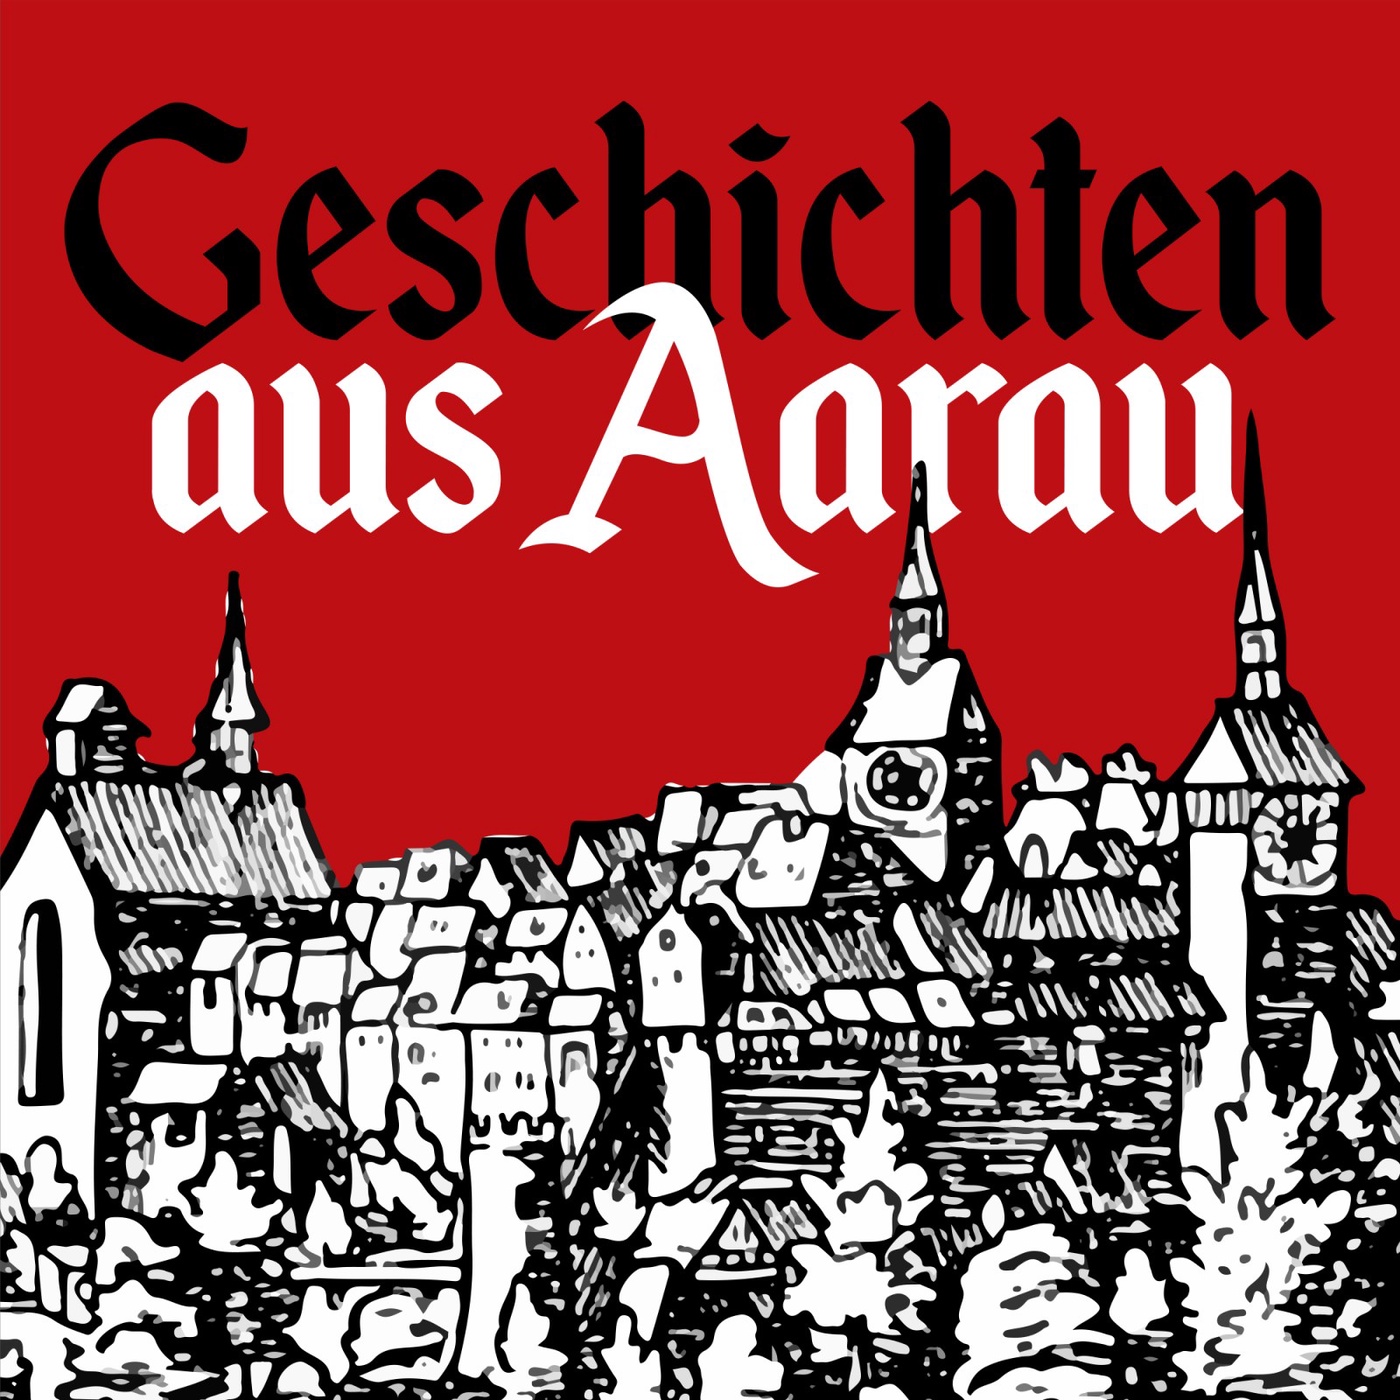 Geschichten aus Aarau